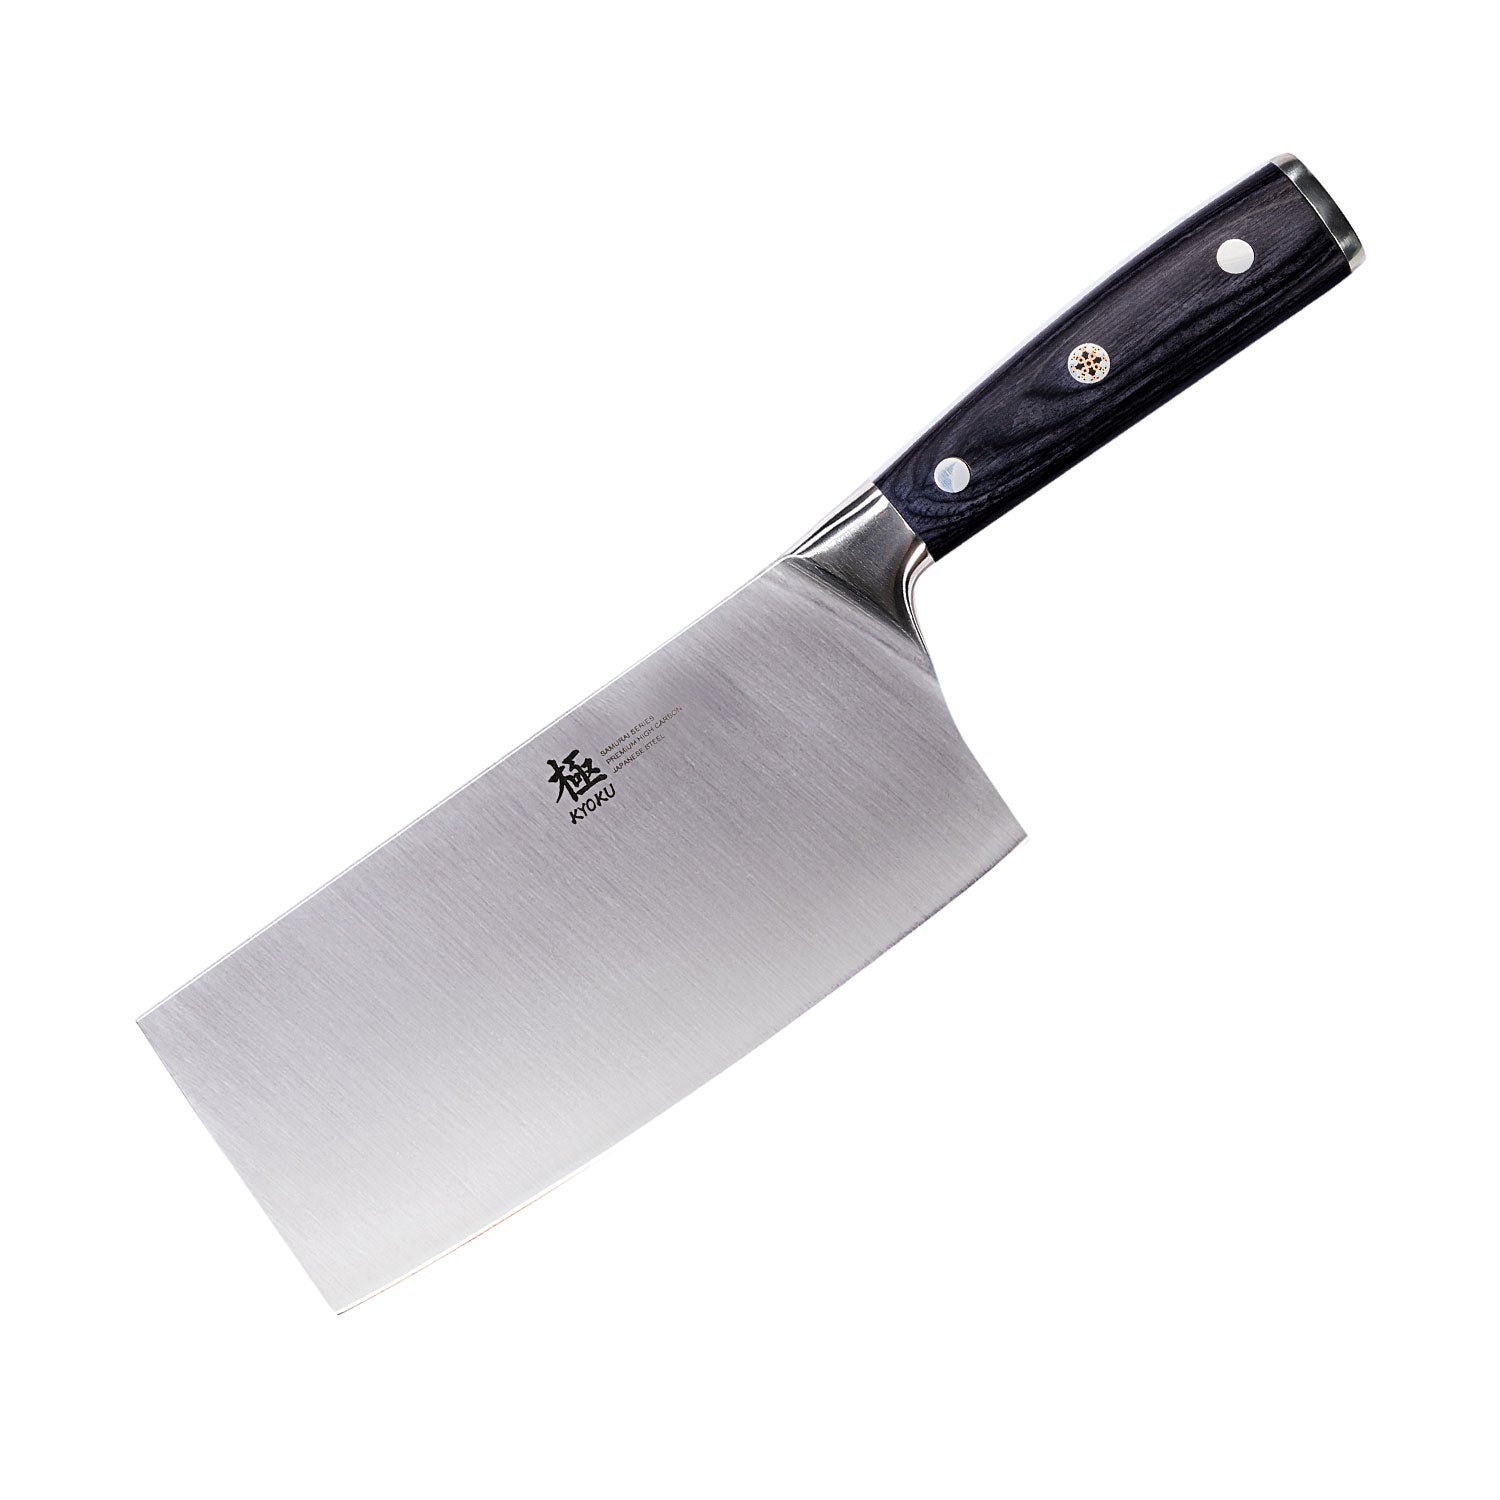 https://kyokuknives.com/cdn/shop/files/Cleaver-Knives---Samurai-Series-Kyoku-Knives-1697013012881.jpg?v=1697615806